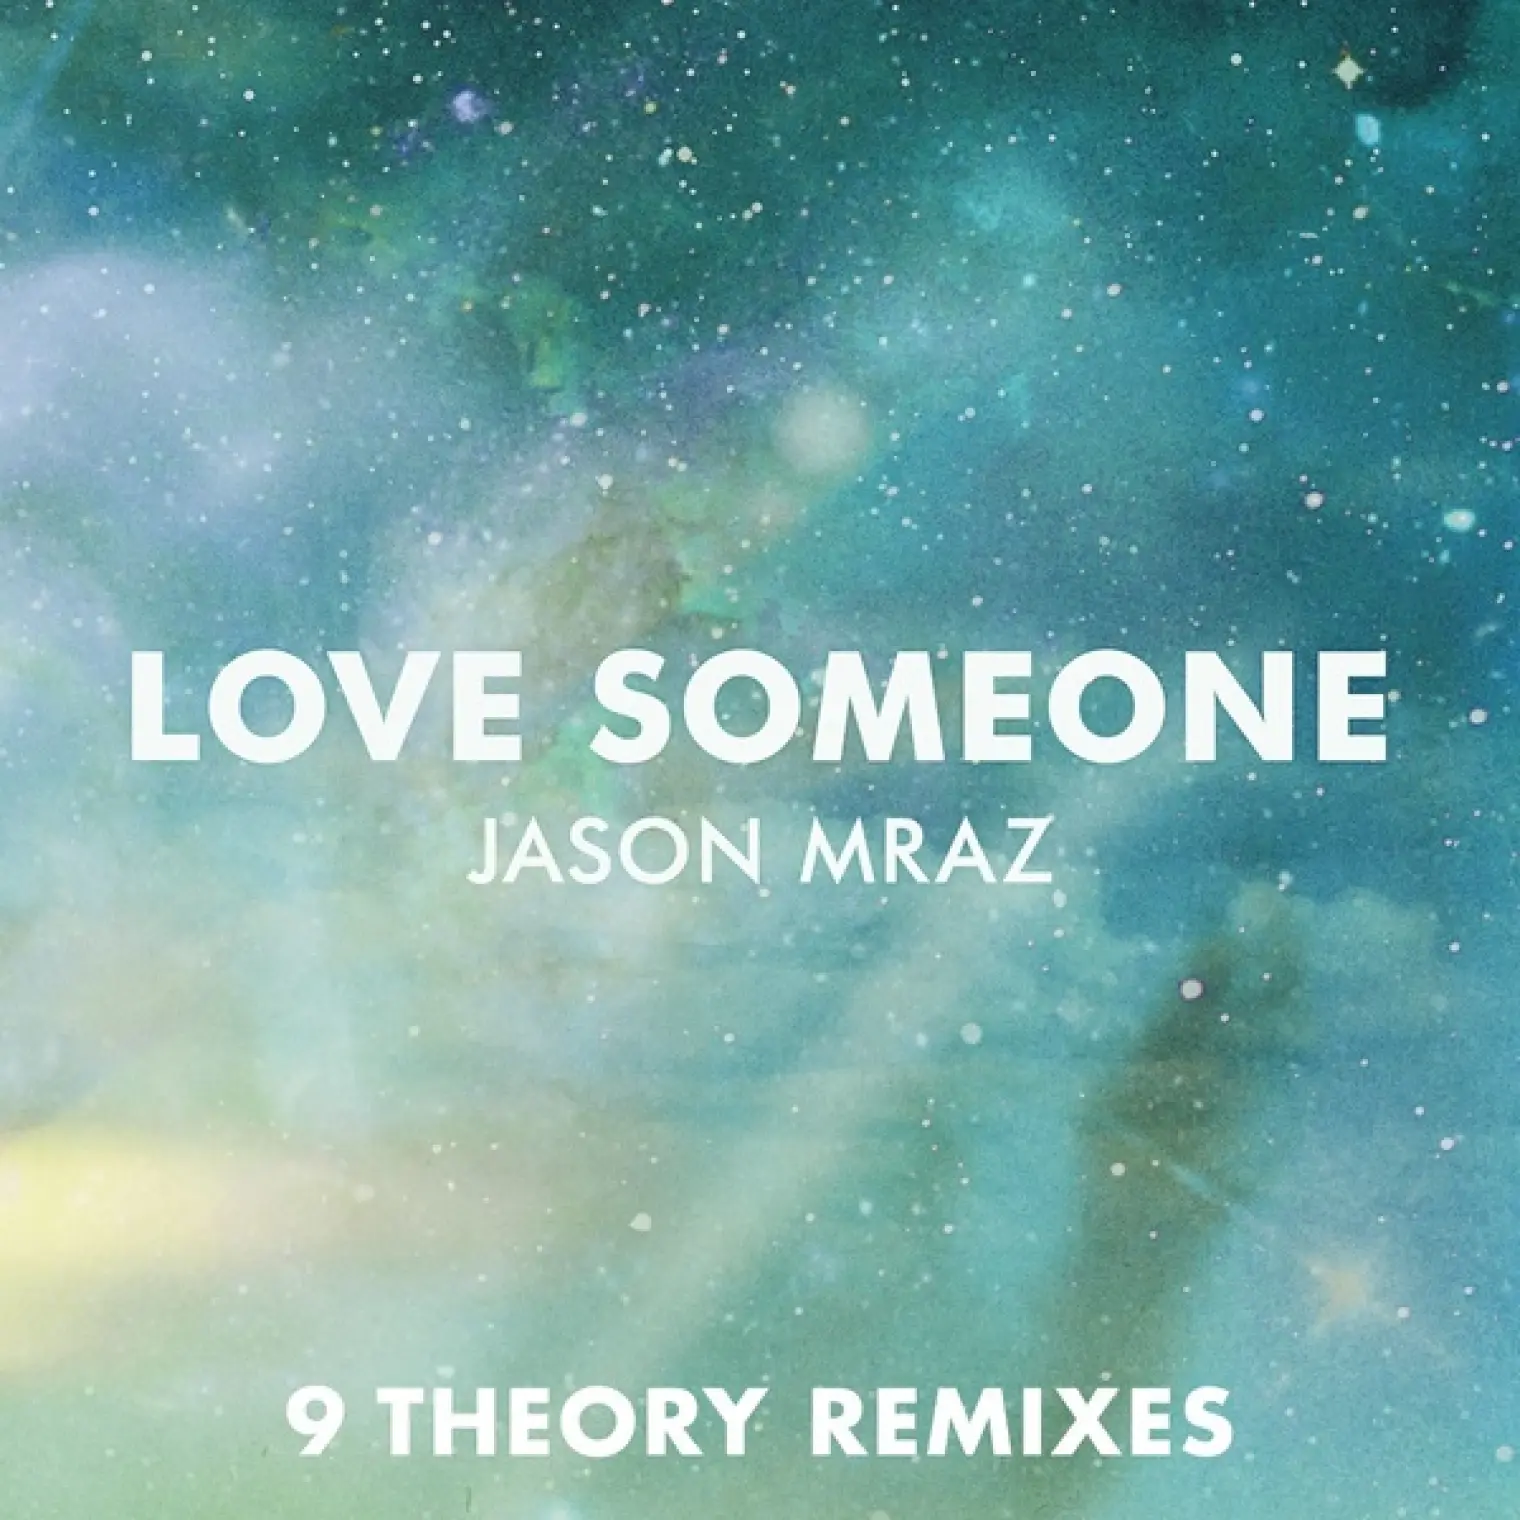 Love Someone (9 Theory Remixes) -  Jason Mraz 